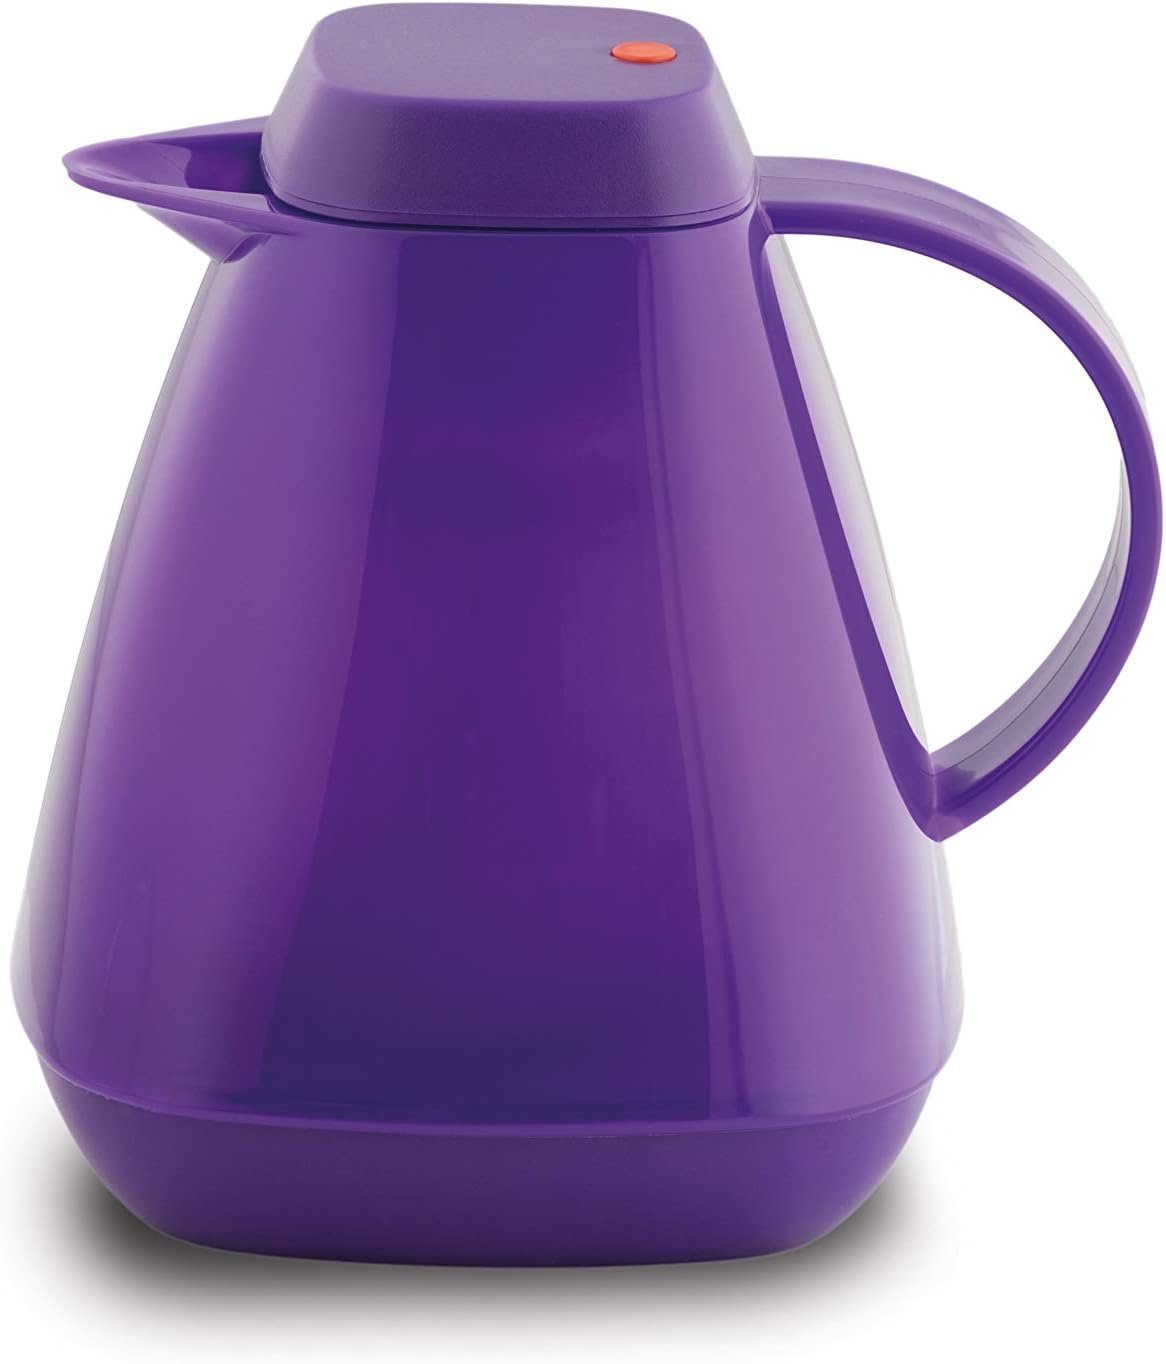 ROTPUNKT Isolierkanne 1,0 Liter 650 Glaseinsatz I hochwertig I langlebig I 24 Std wamm, (Kaffeekanne I Teekanne), robust und auslaufsicher purple peacock